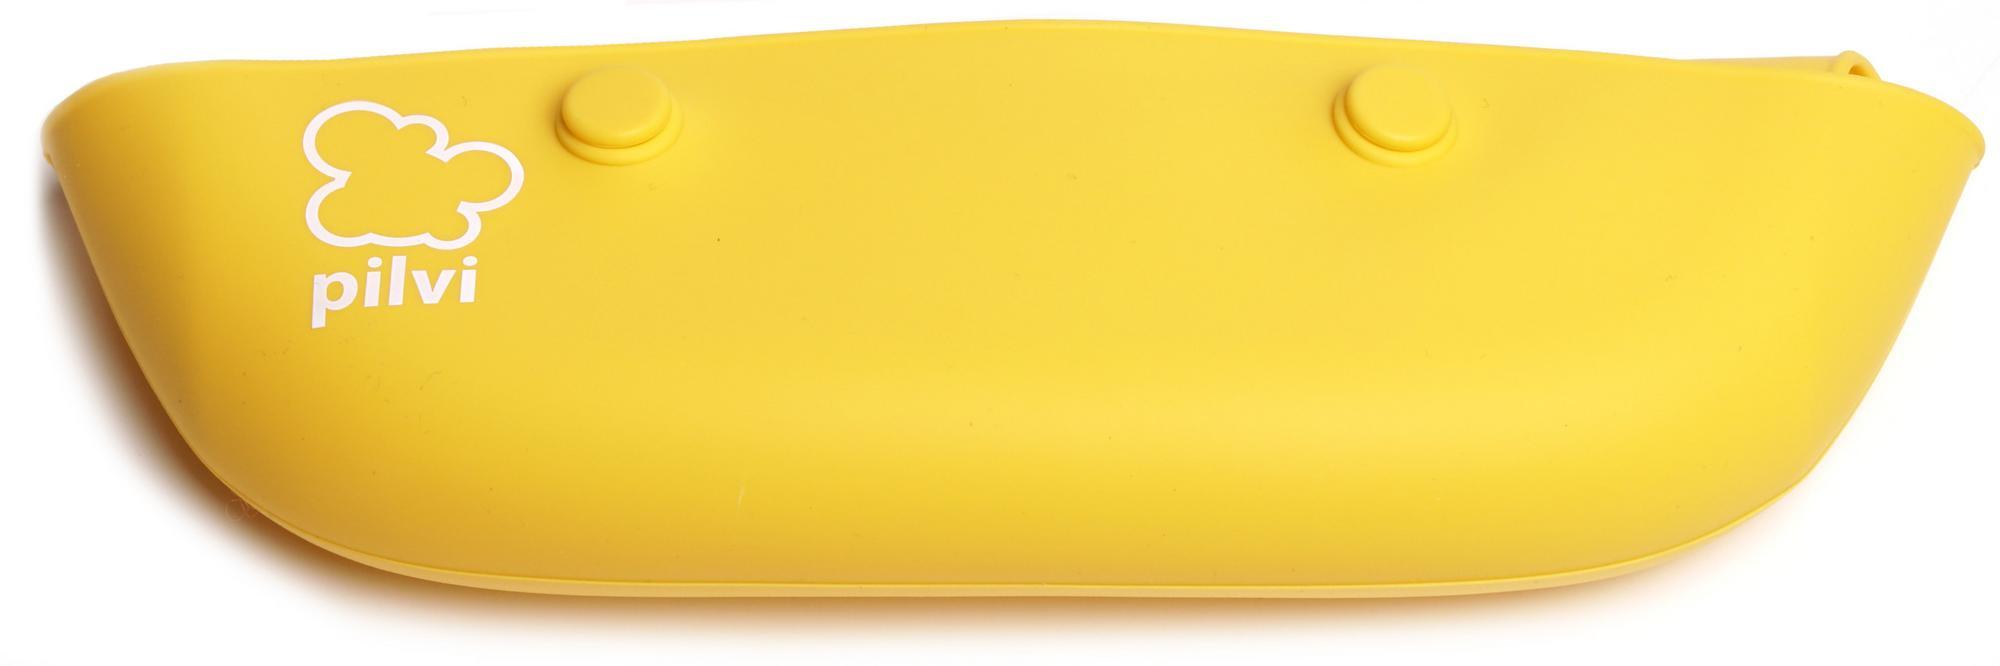 keltainen silikoninen ruokalappu rullalla